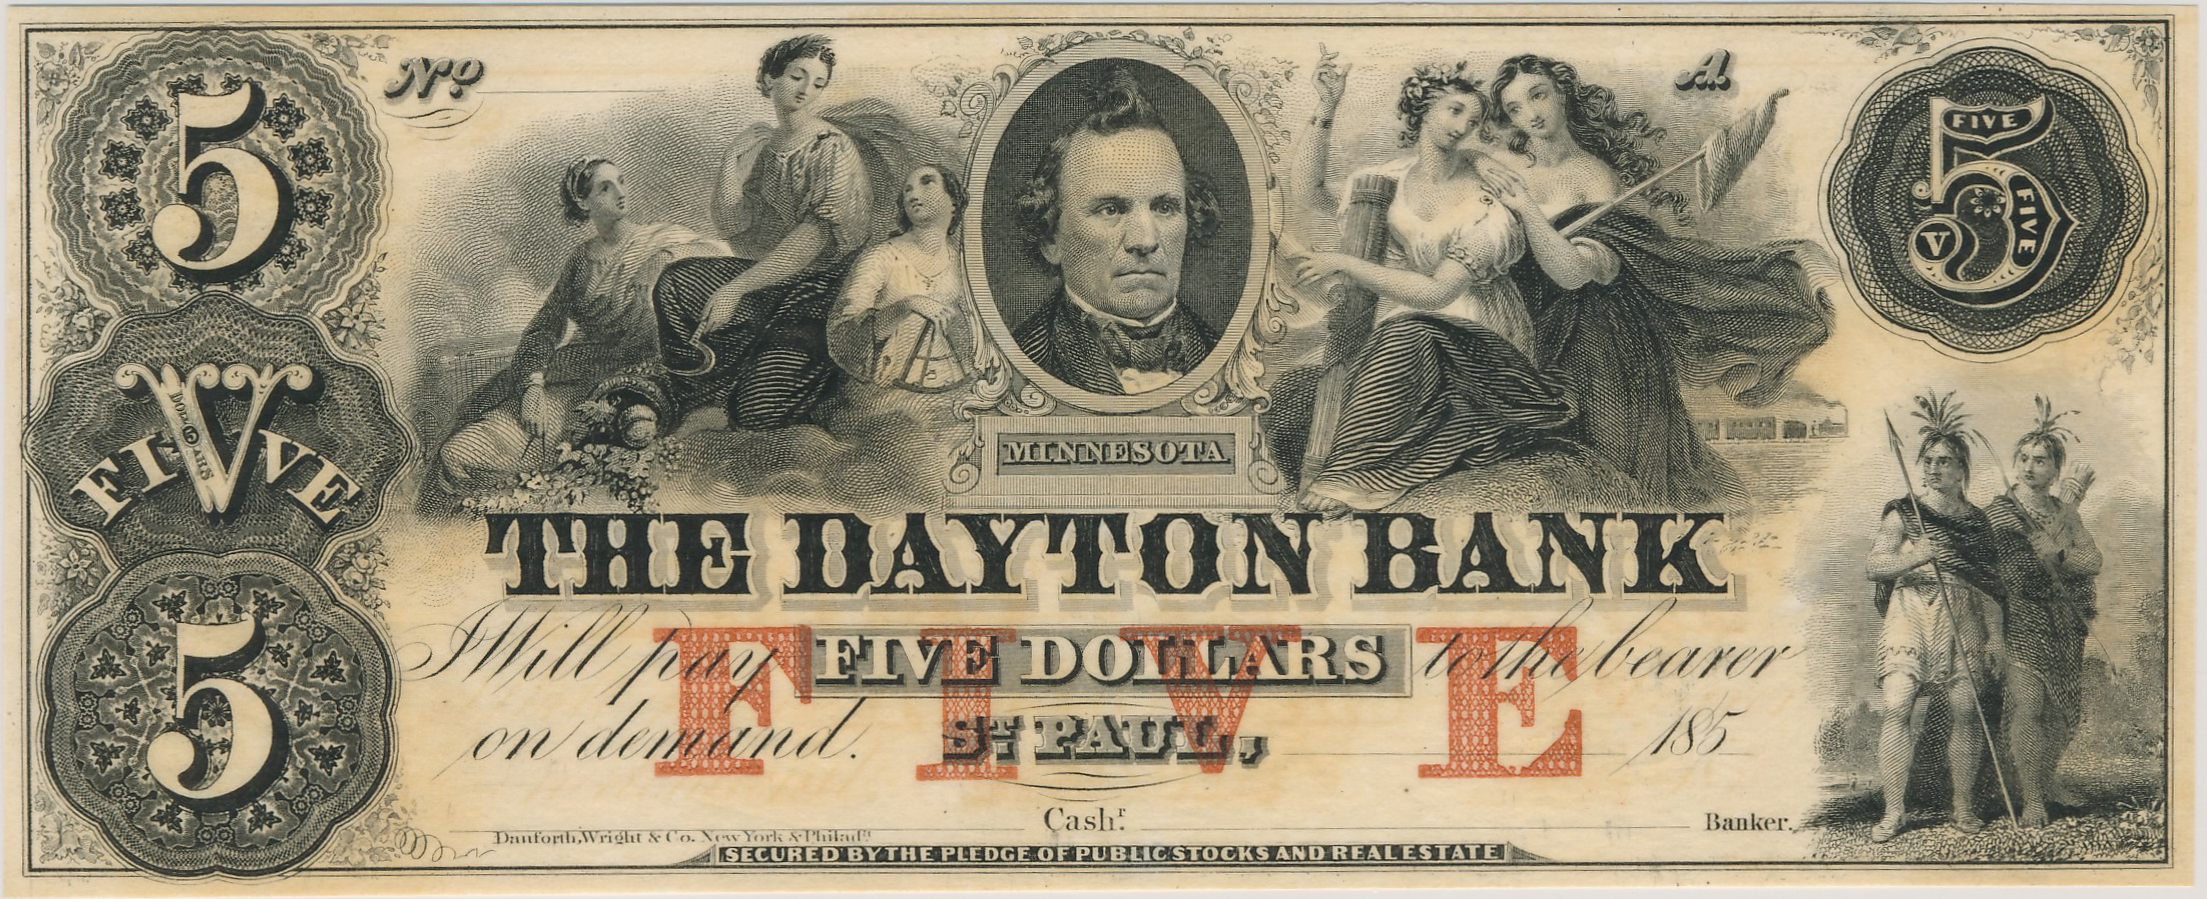 Dayton Bank